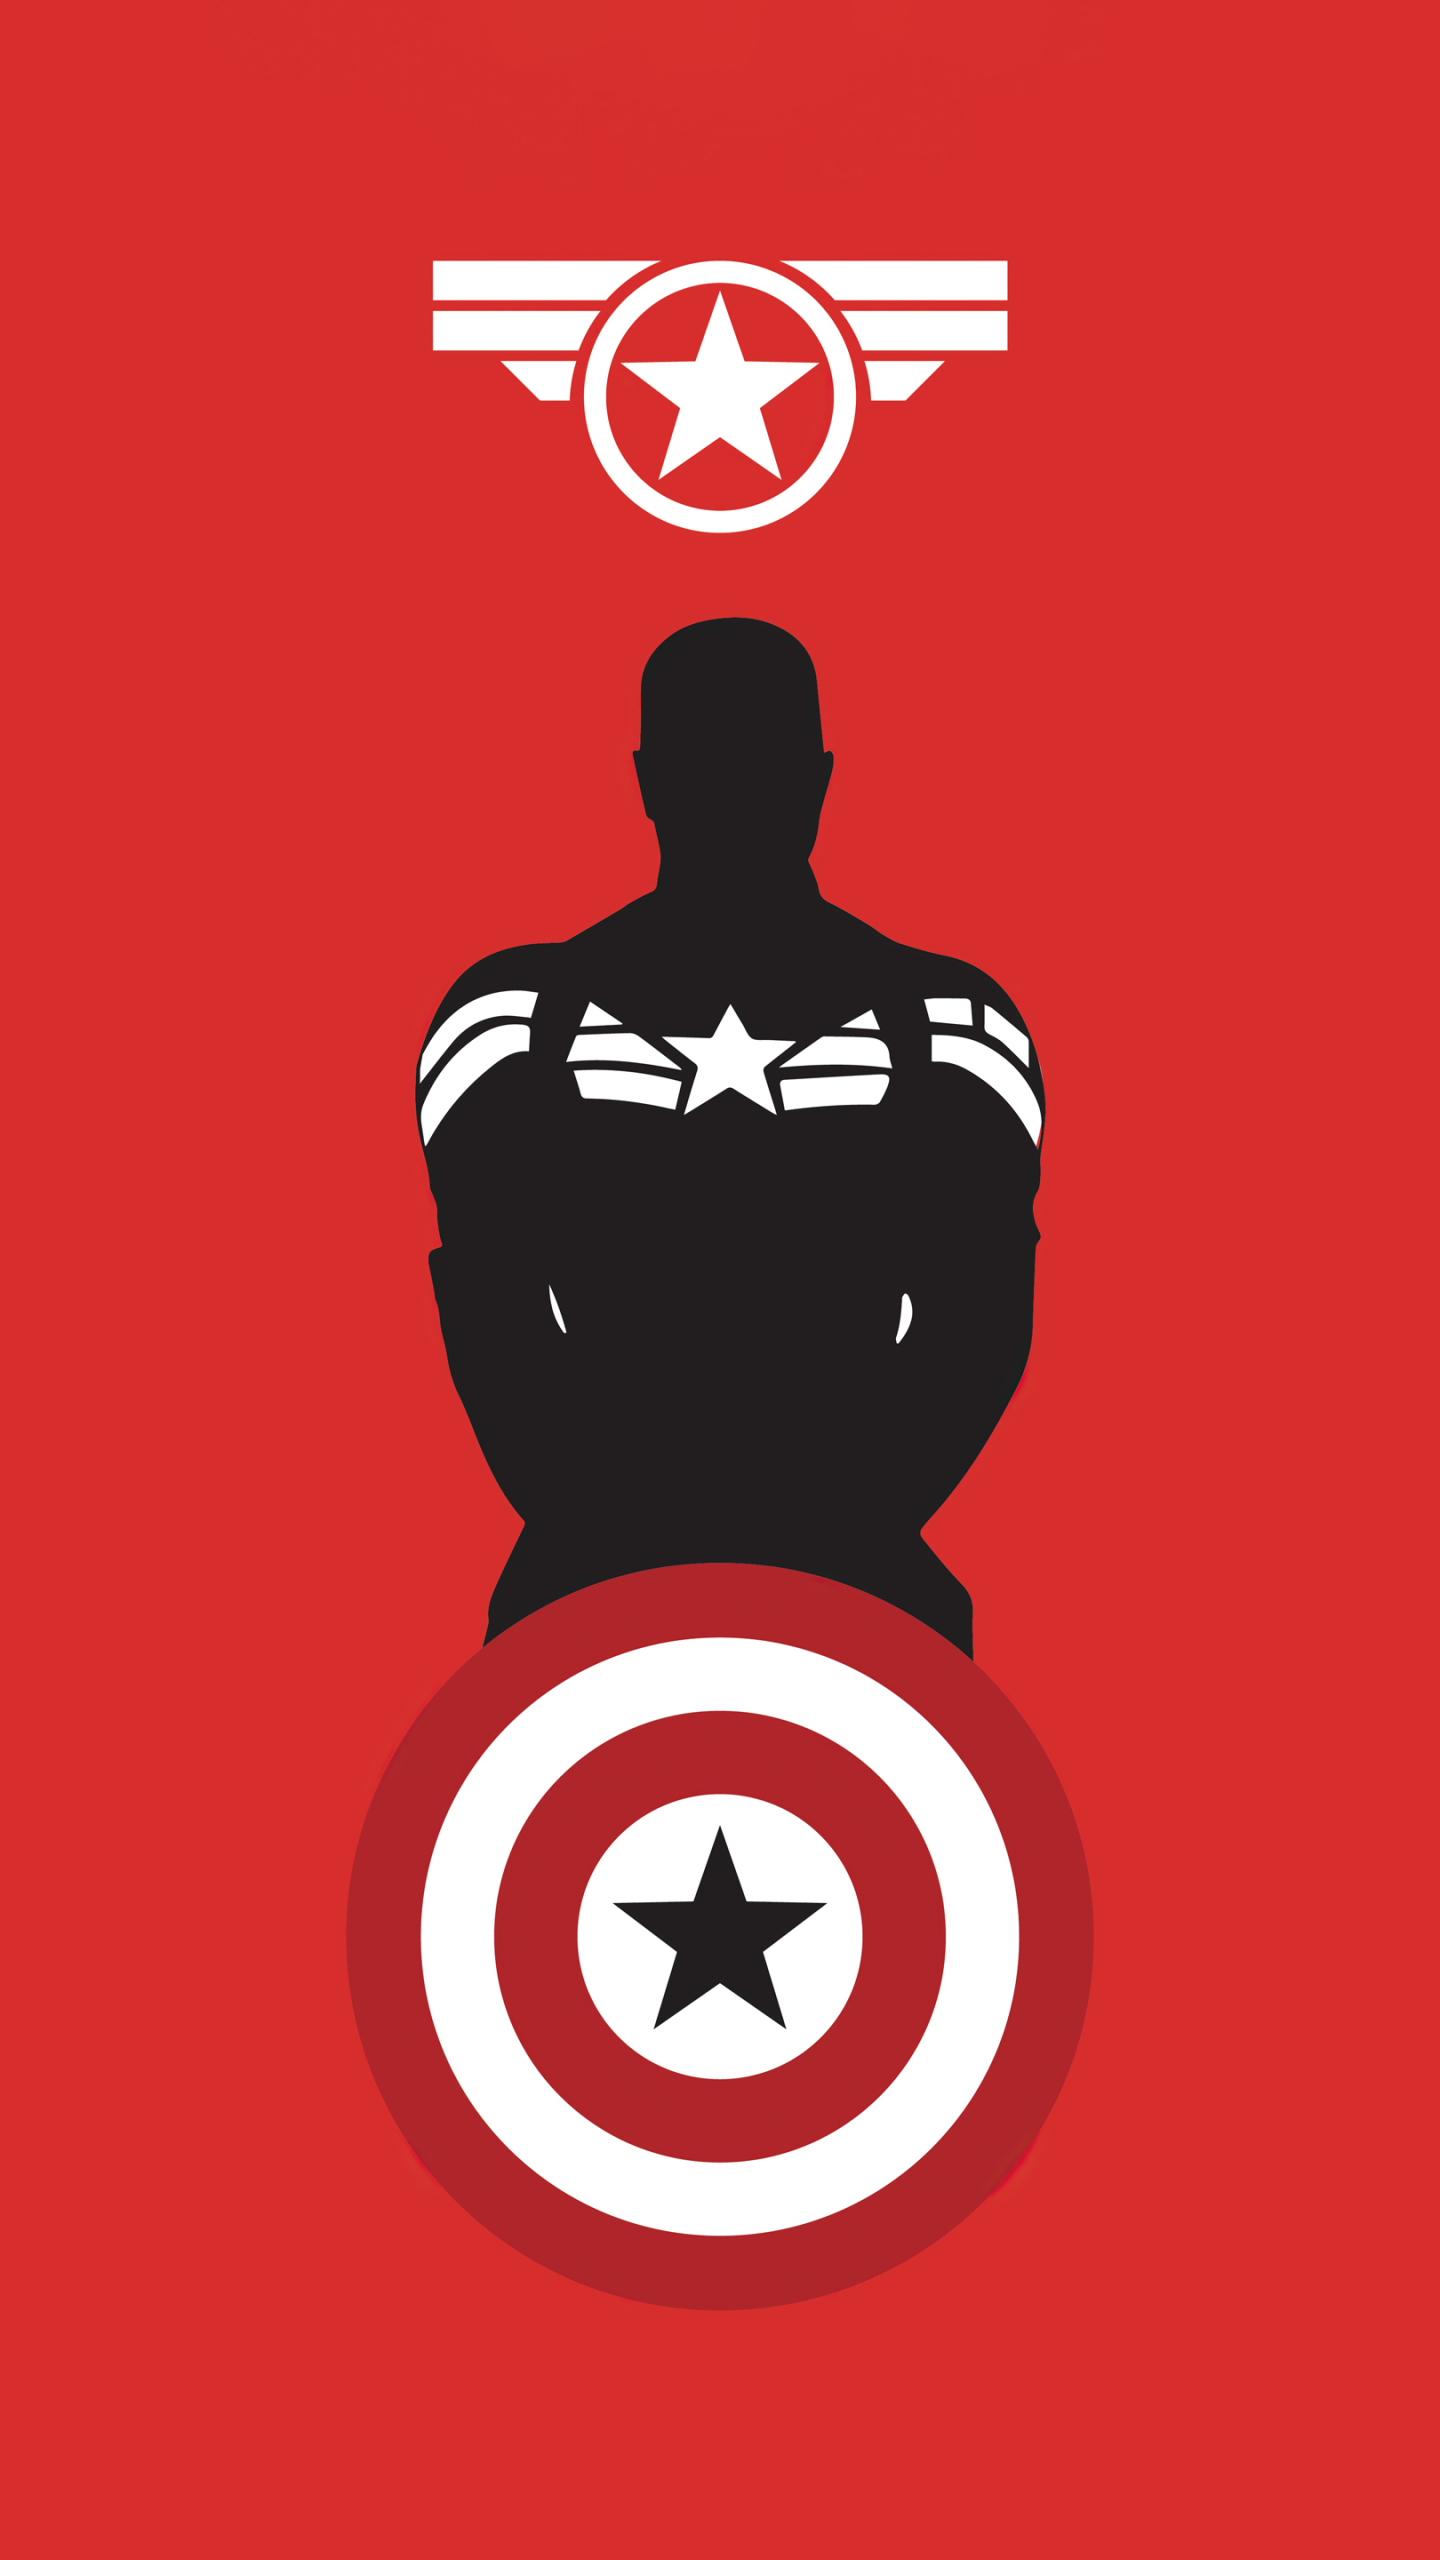 Скачать обои бесплатно Красный, Комиксы, Минималистский, Капитан Америка, Супергерой картинка на рабочий стол ПК